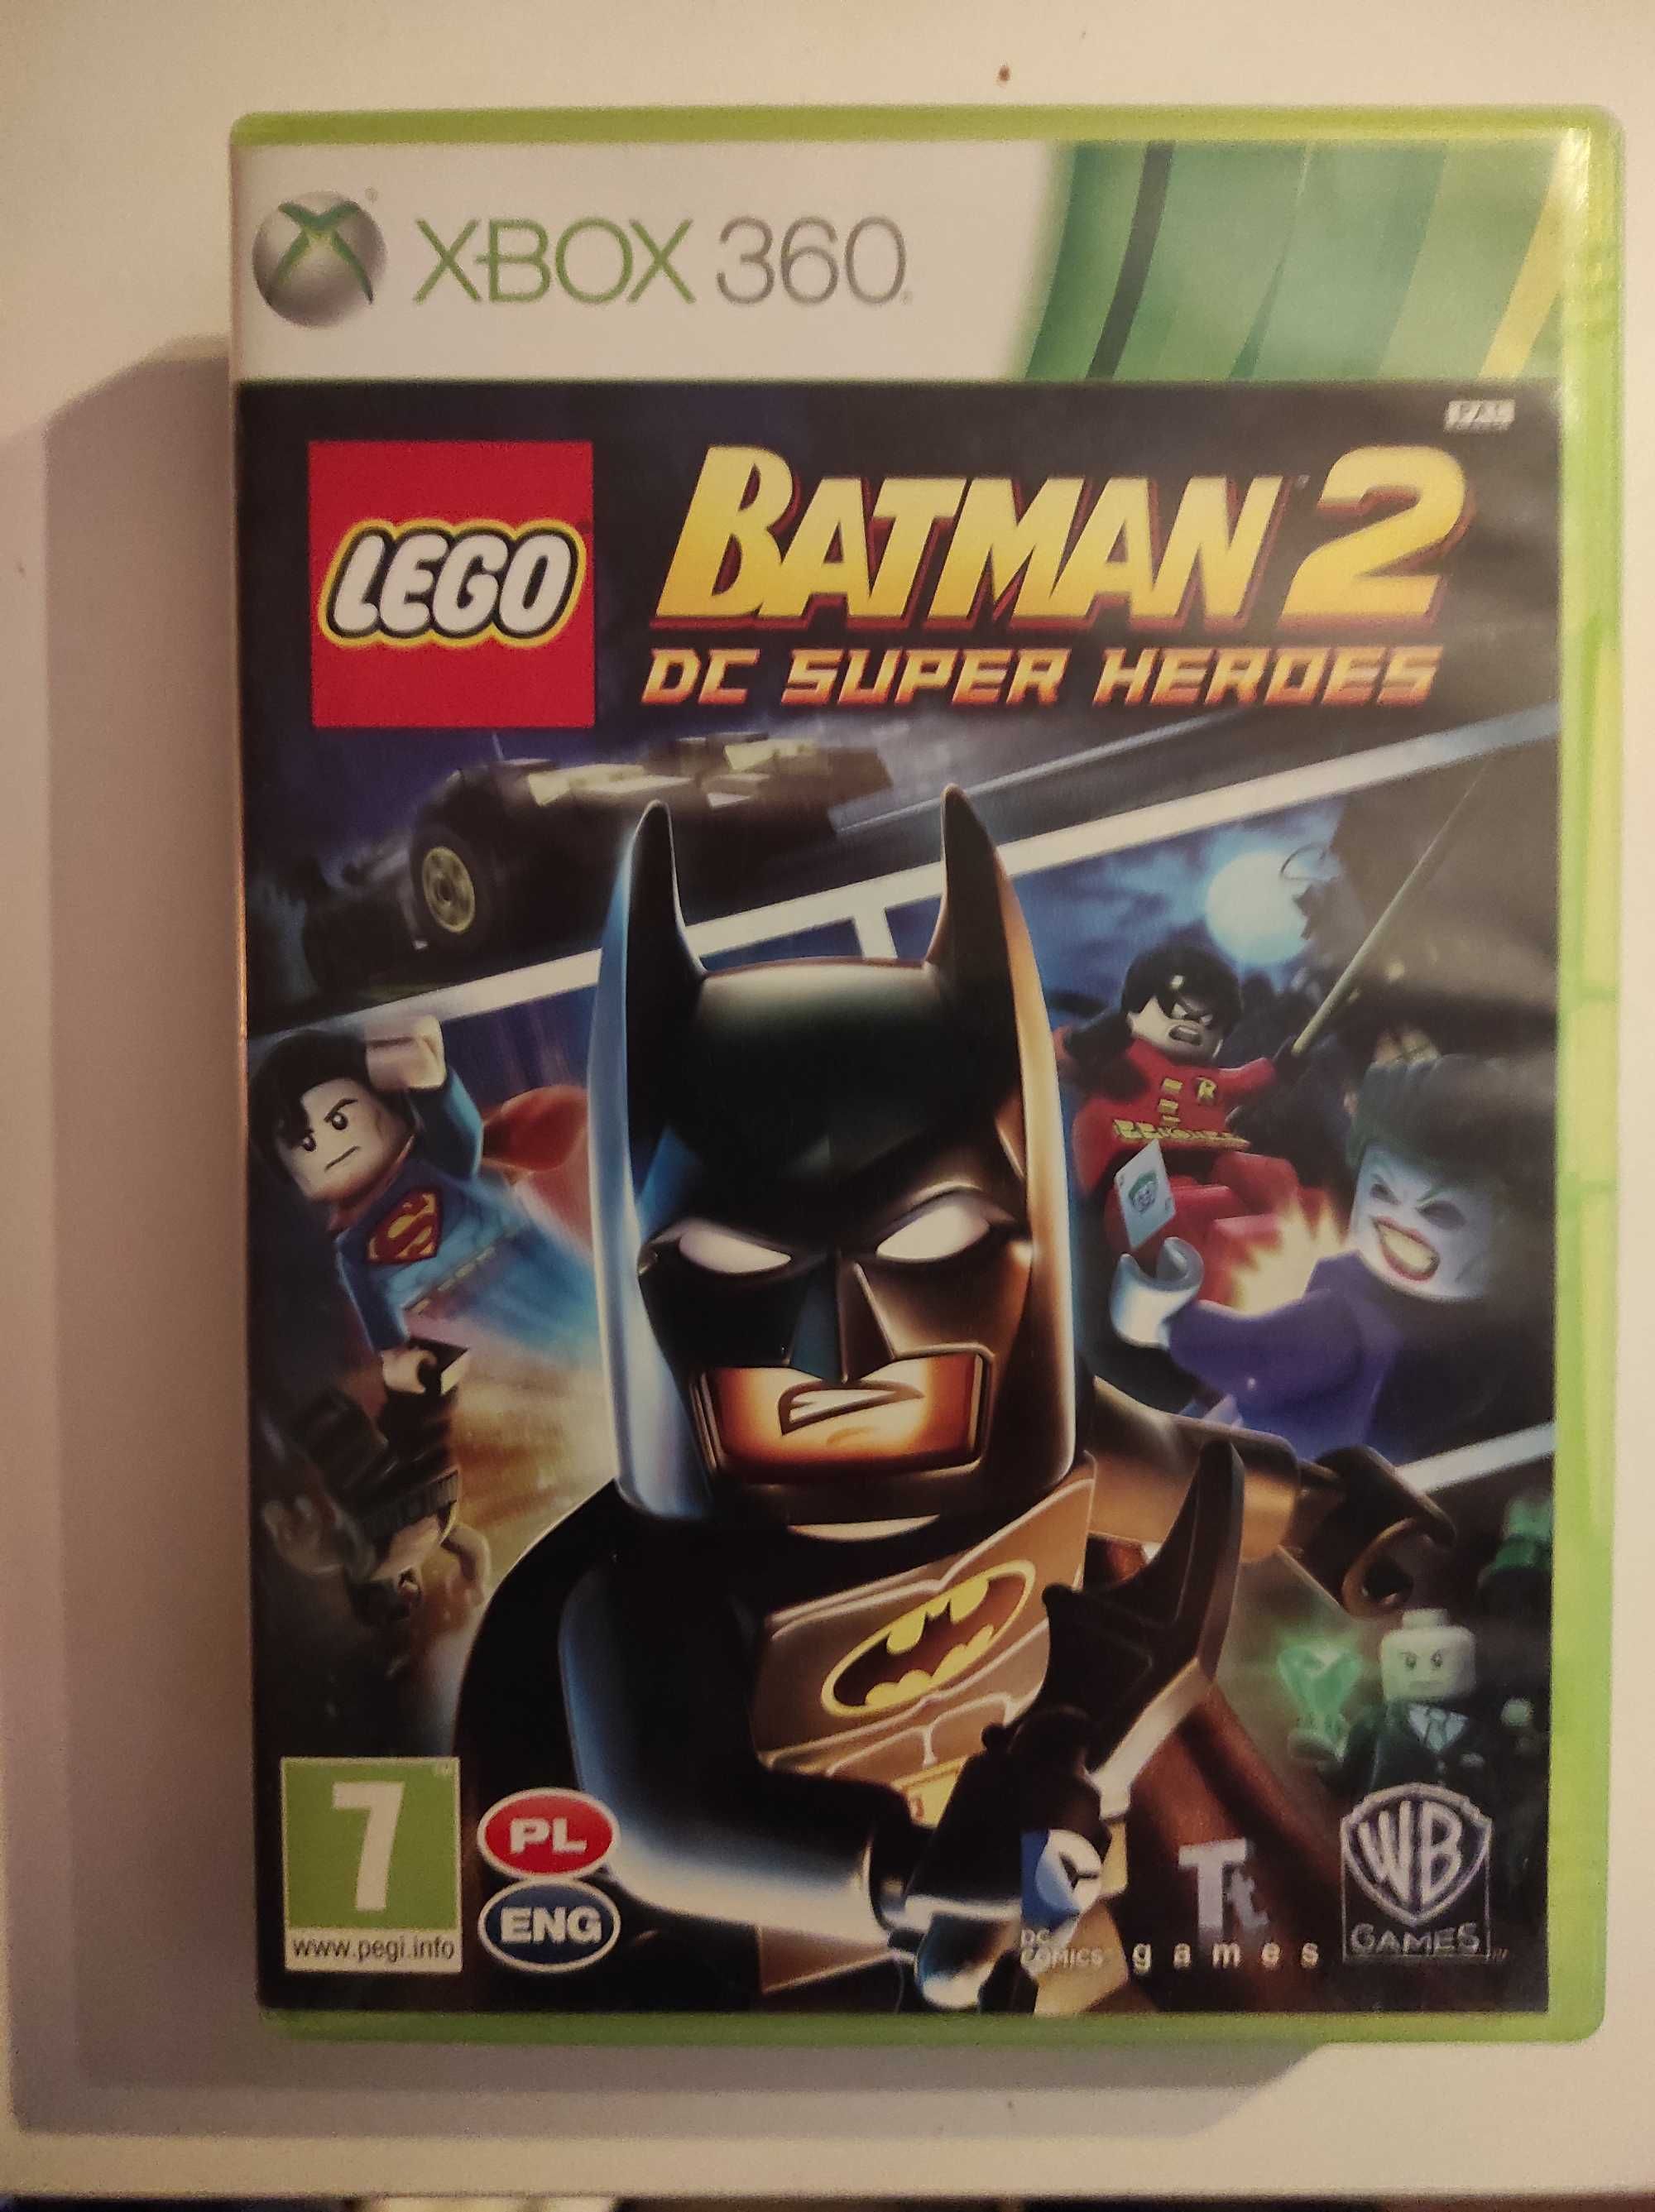 Batman 2 DC super heroes Xbox